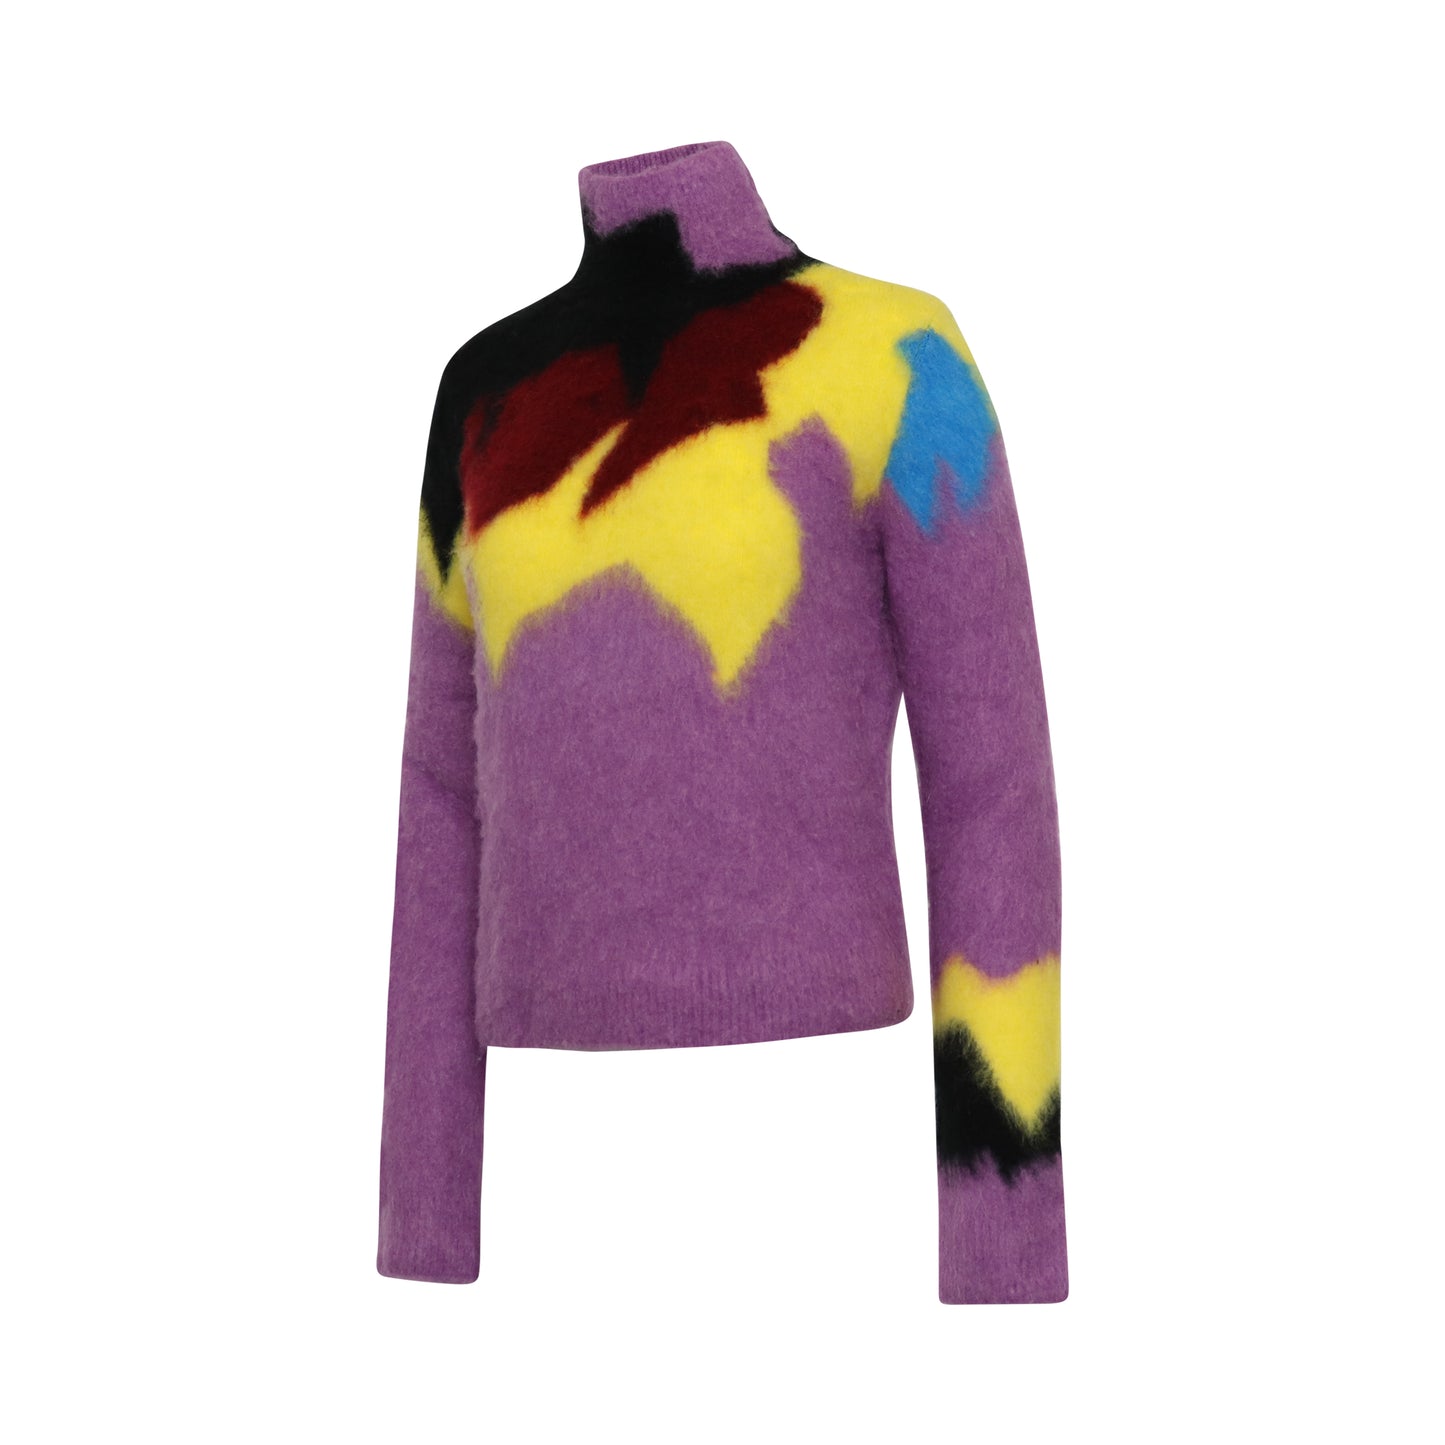 Intarsia Turtleneck Sweater in Lilac